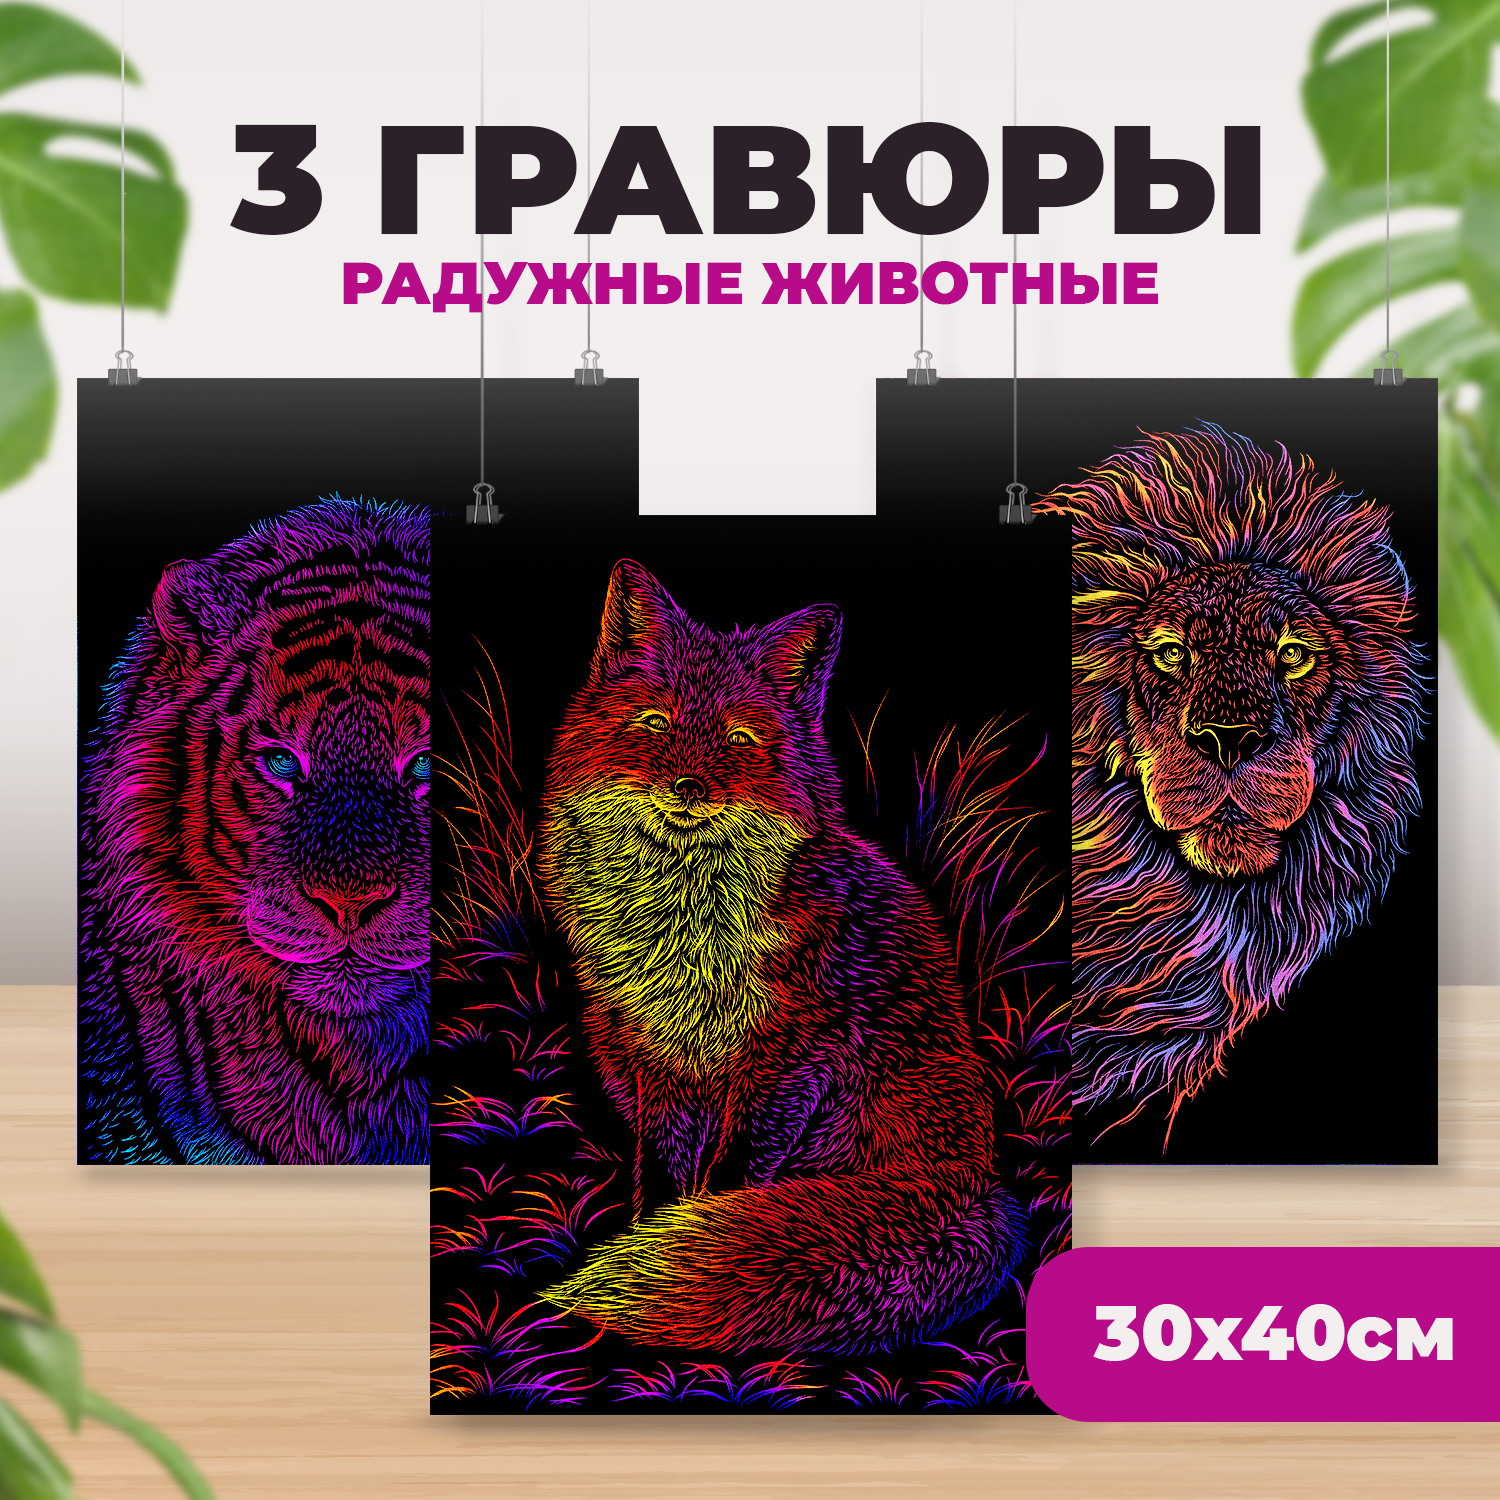 Набор для творчества LORI 3 цветные гравюры Радужные животные 30х40 см - фото 1